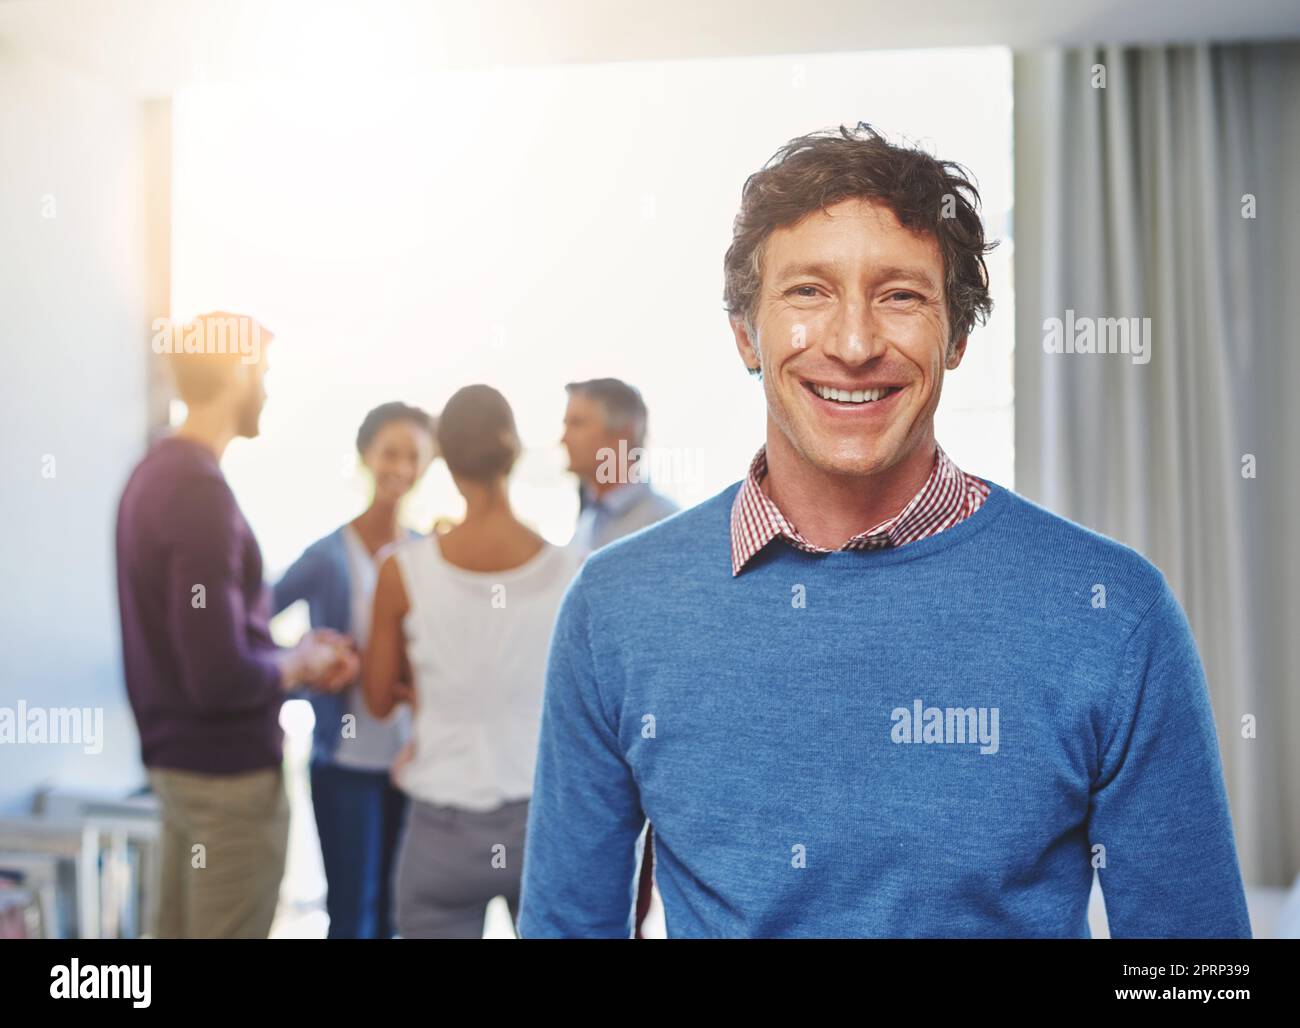 Se sentir bien dans sa carrière. Portrait d'un homme d'affaires avec ses collègues debout en arrière-plan. Banque D'Images